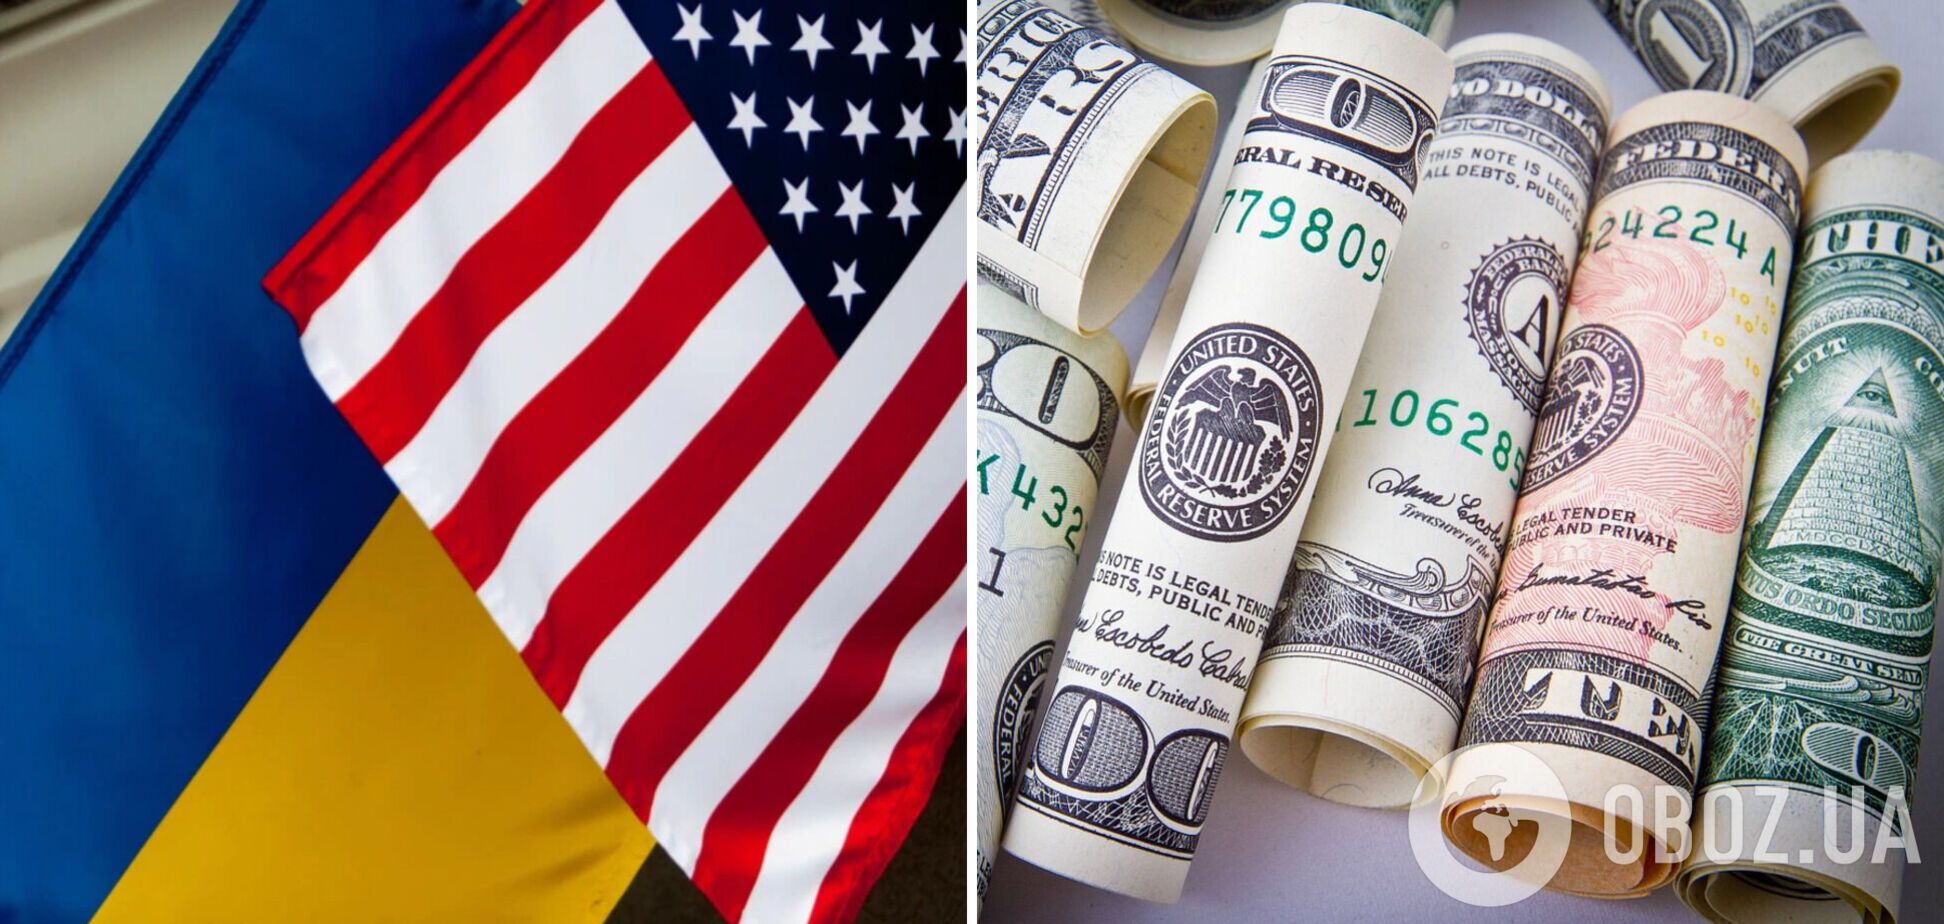 Украина получит от США $4,5 млрд помощи